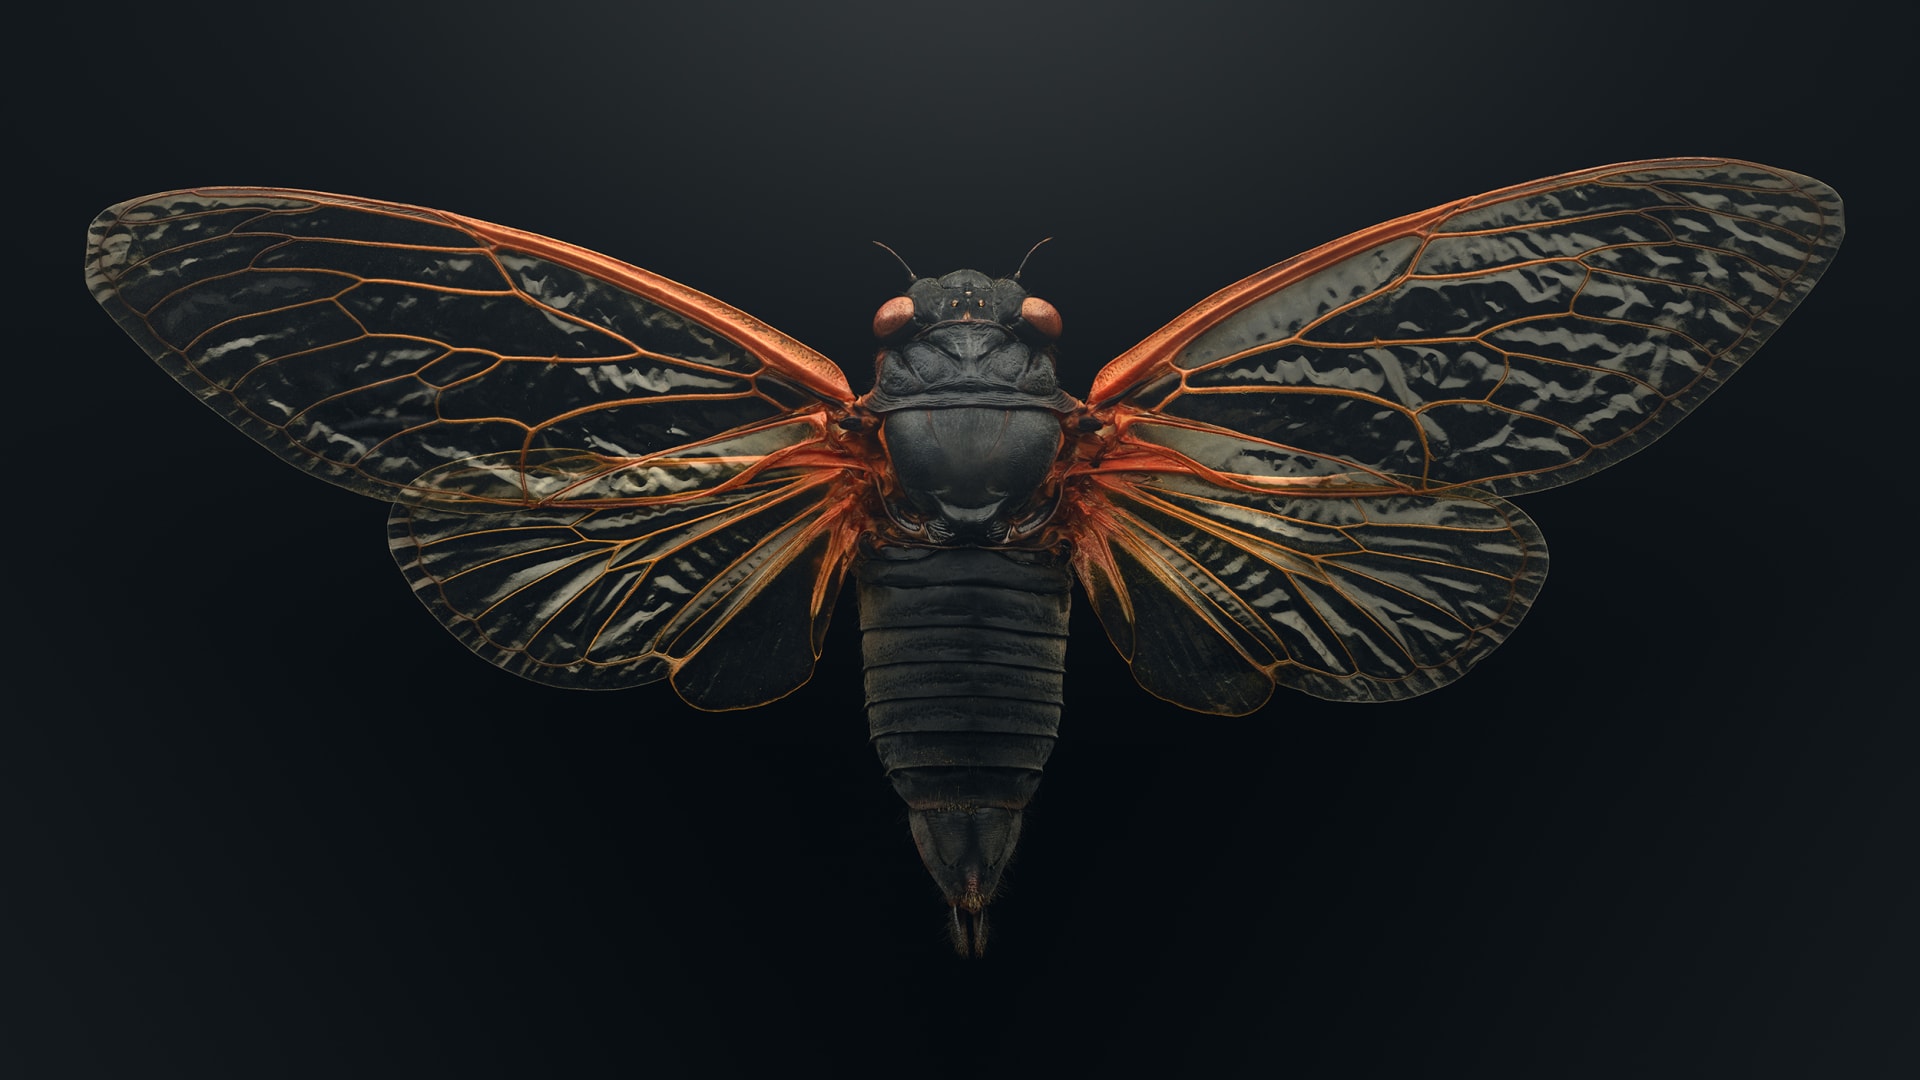 "حشراتٌ في خطر"..صور دقيقة تبرز جمال مخلوقات مهددة تشاركنا الكوكب 